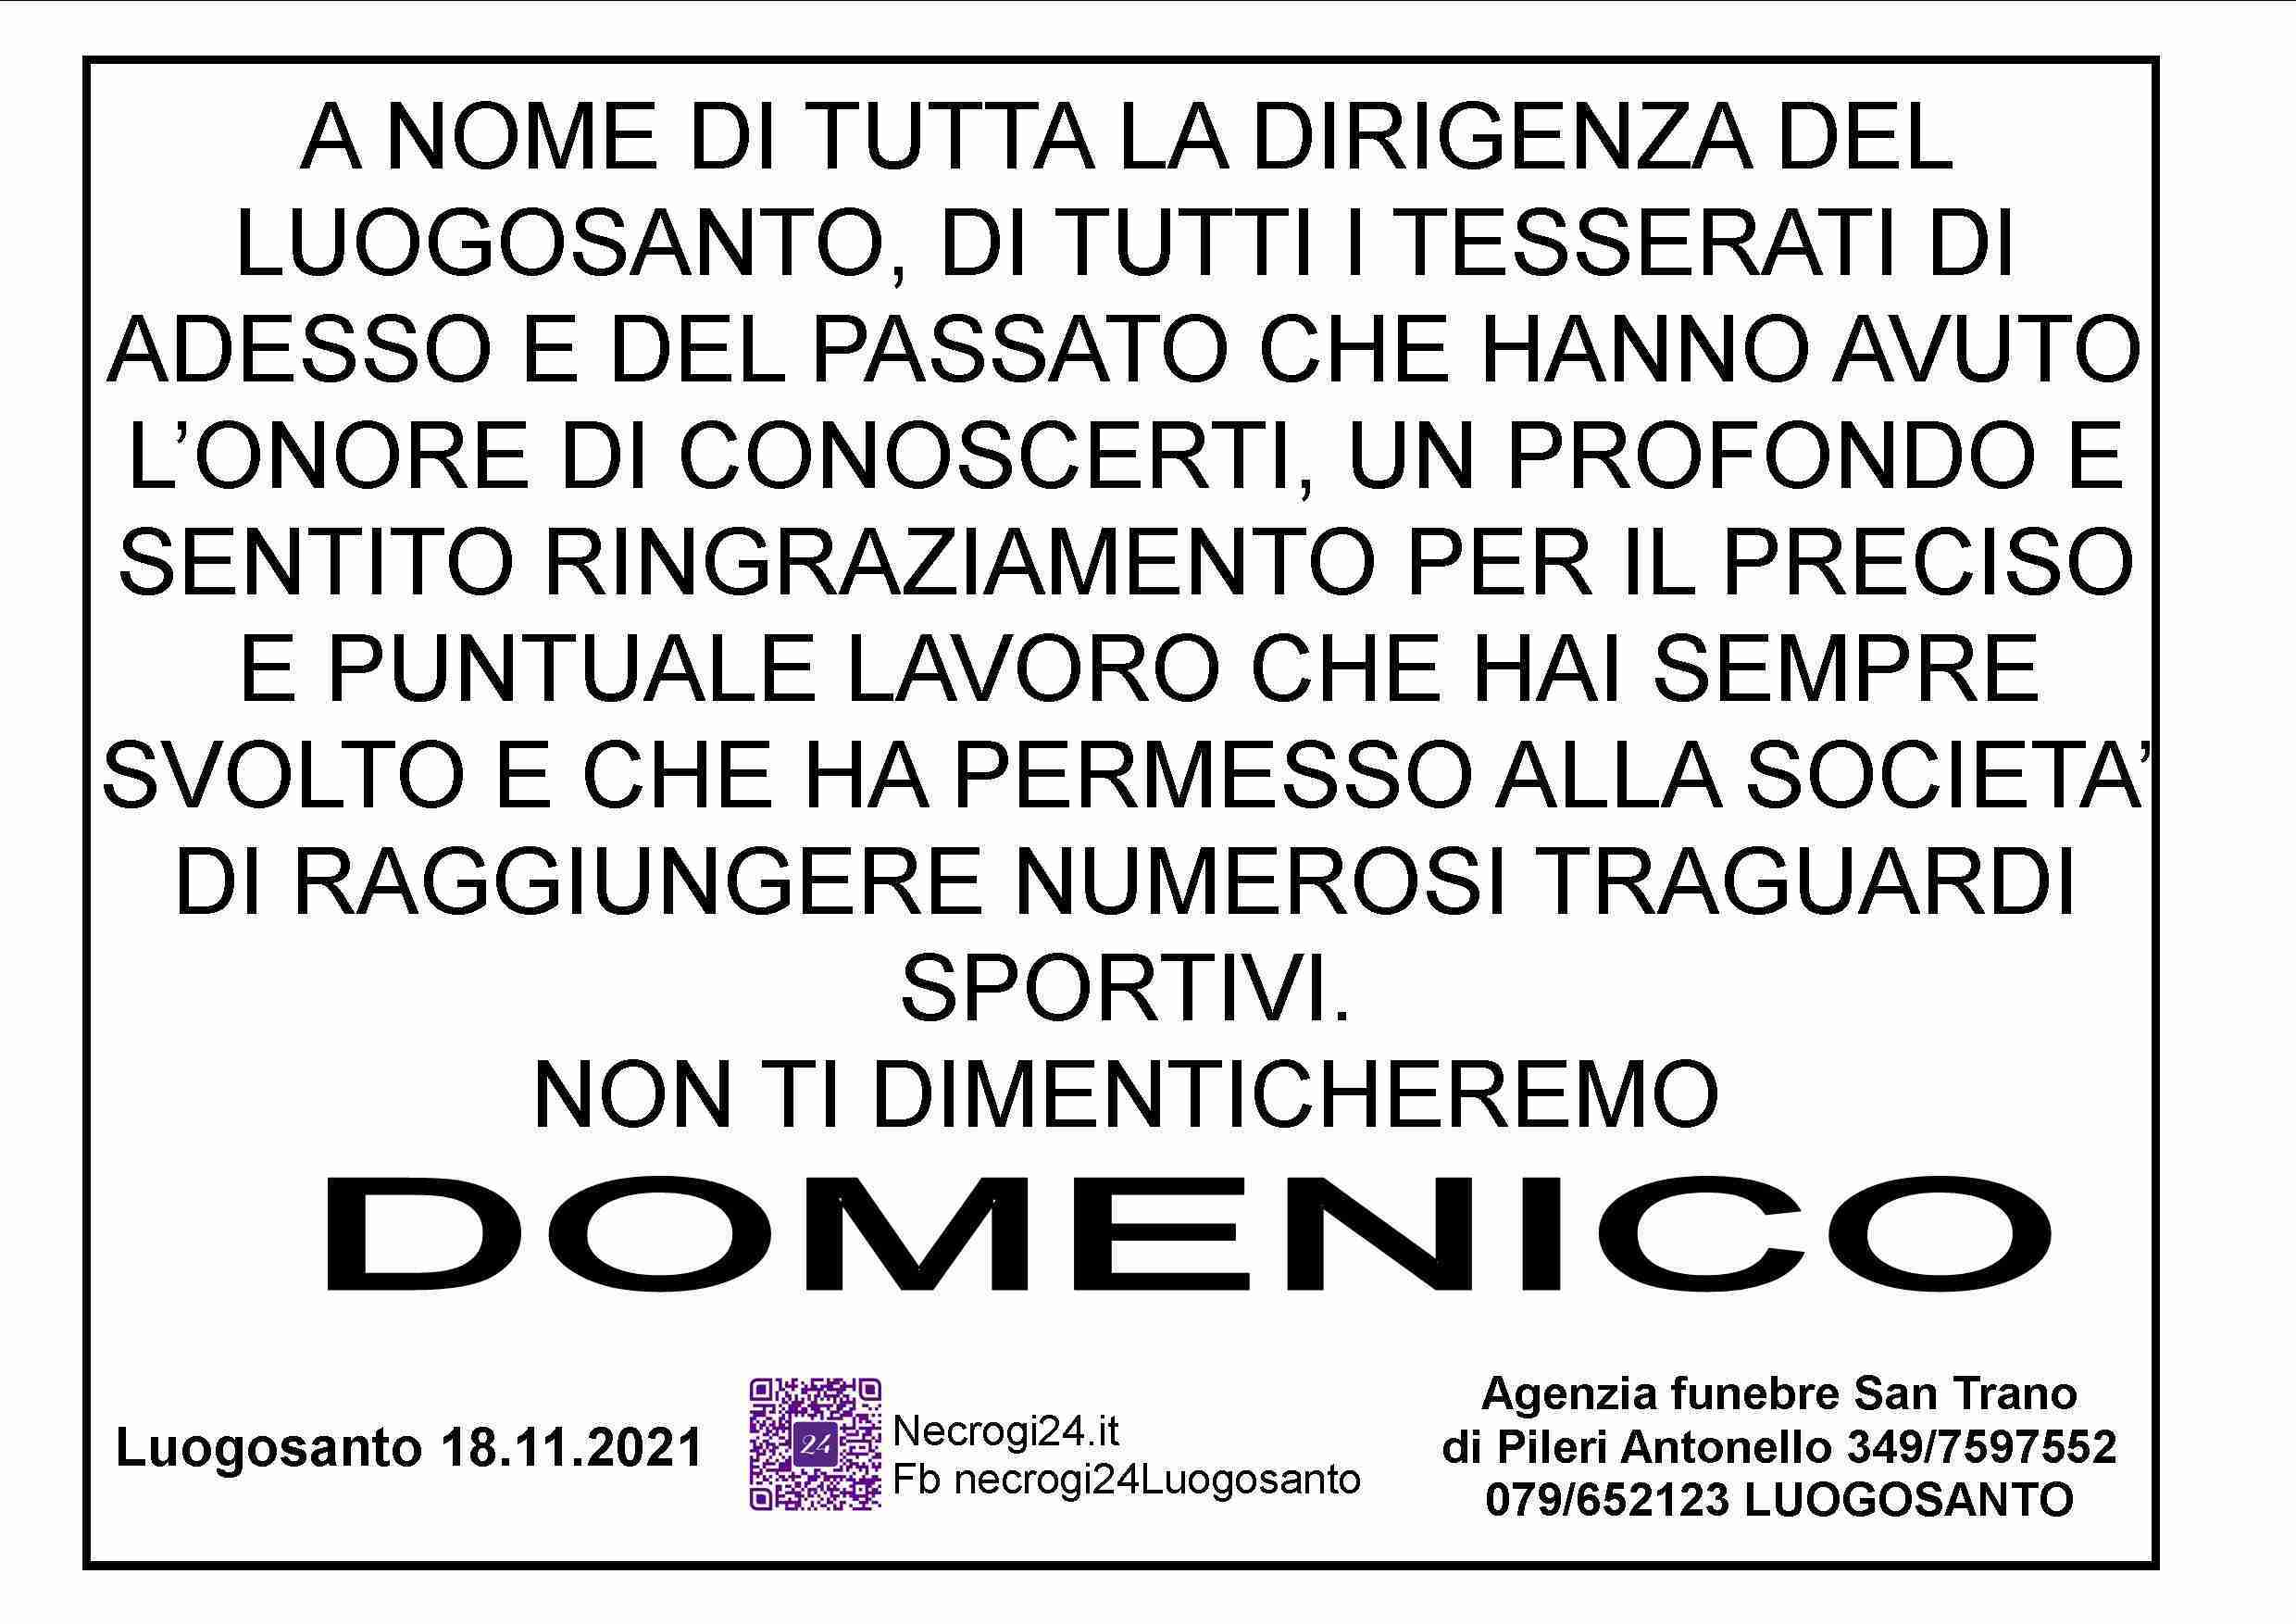 Domenico Degosciu